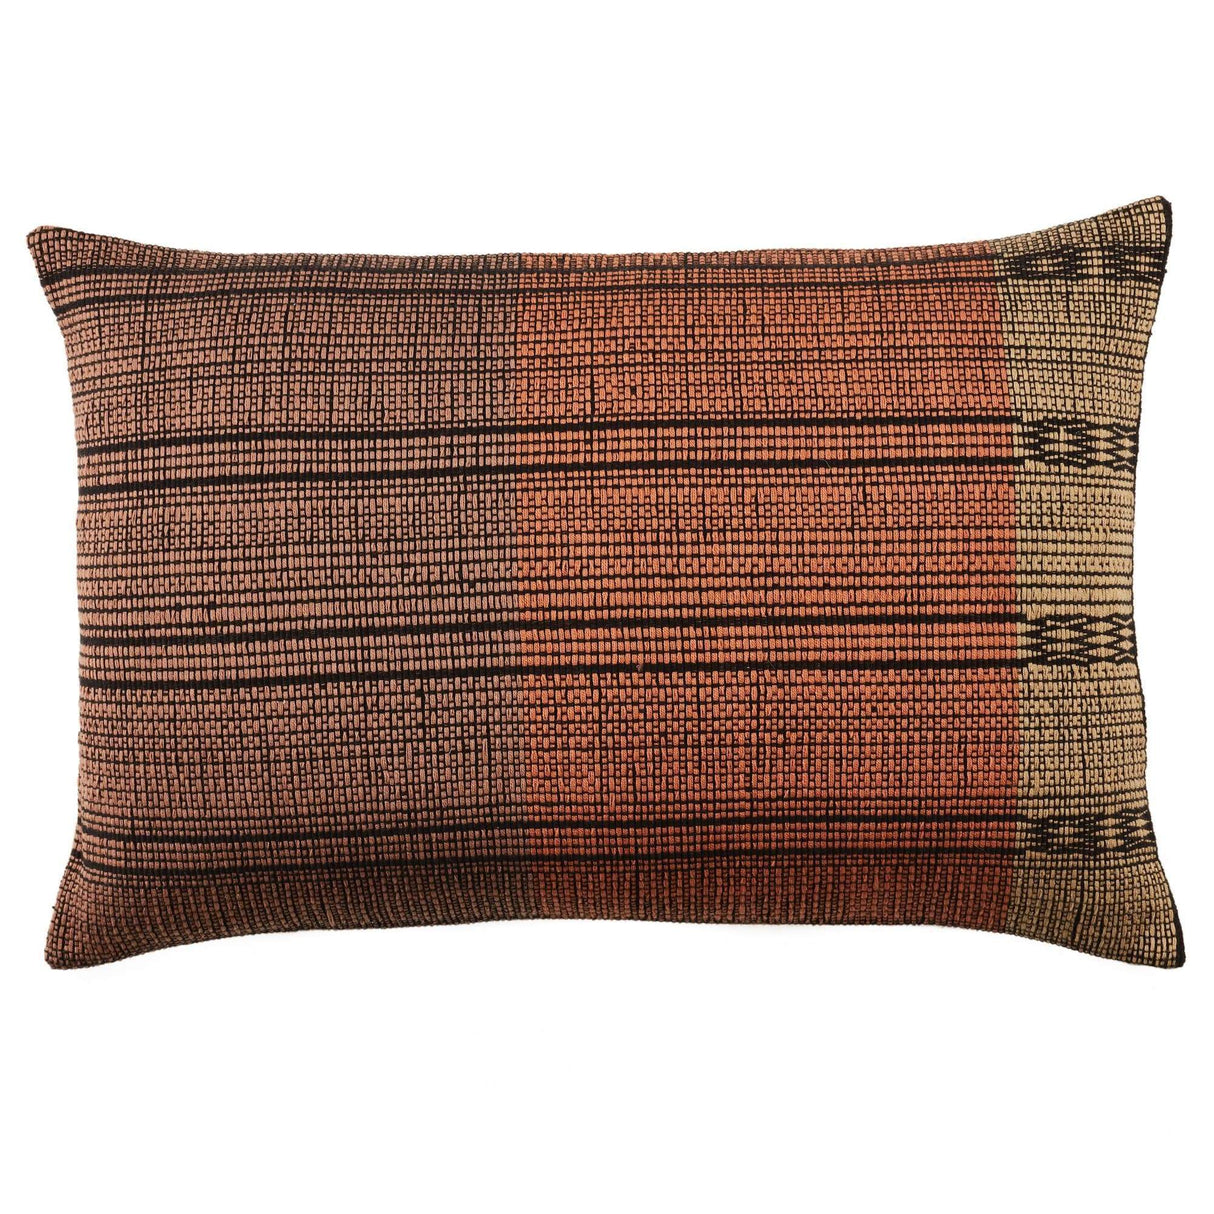 Jaipur Nagaland Lumbar Pillow - Tan/Black Pillow & Decor jaipur-PLW103690 887962888521